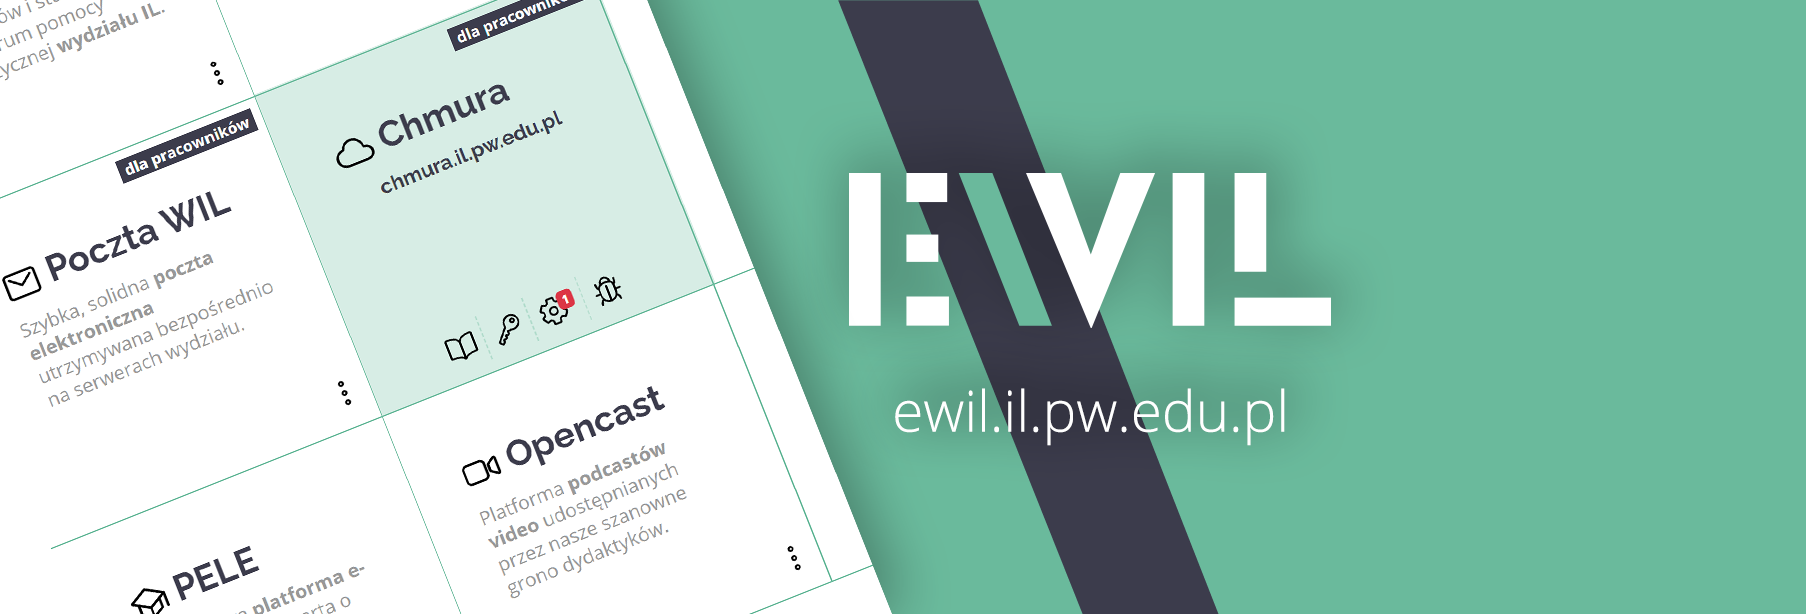 EWIL – nowa strona ułatwiająca dostęp do usług informatycznych